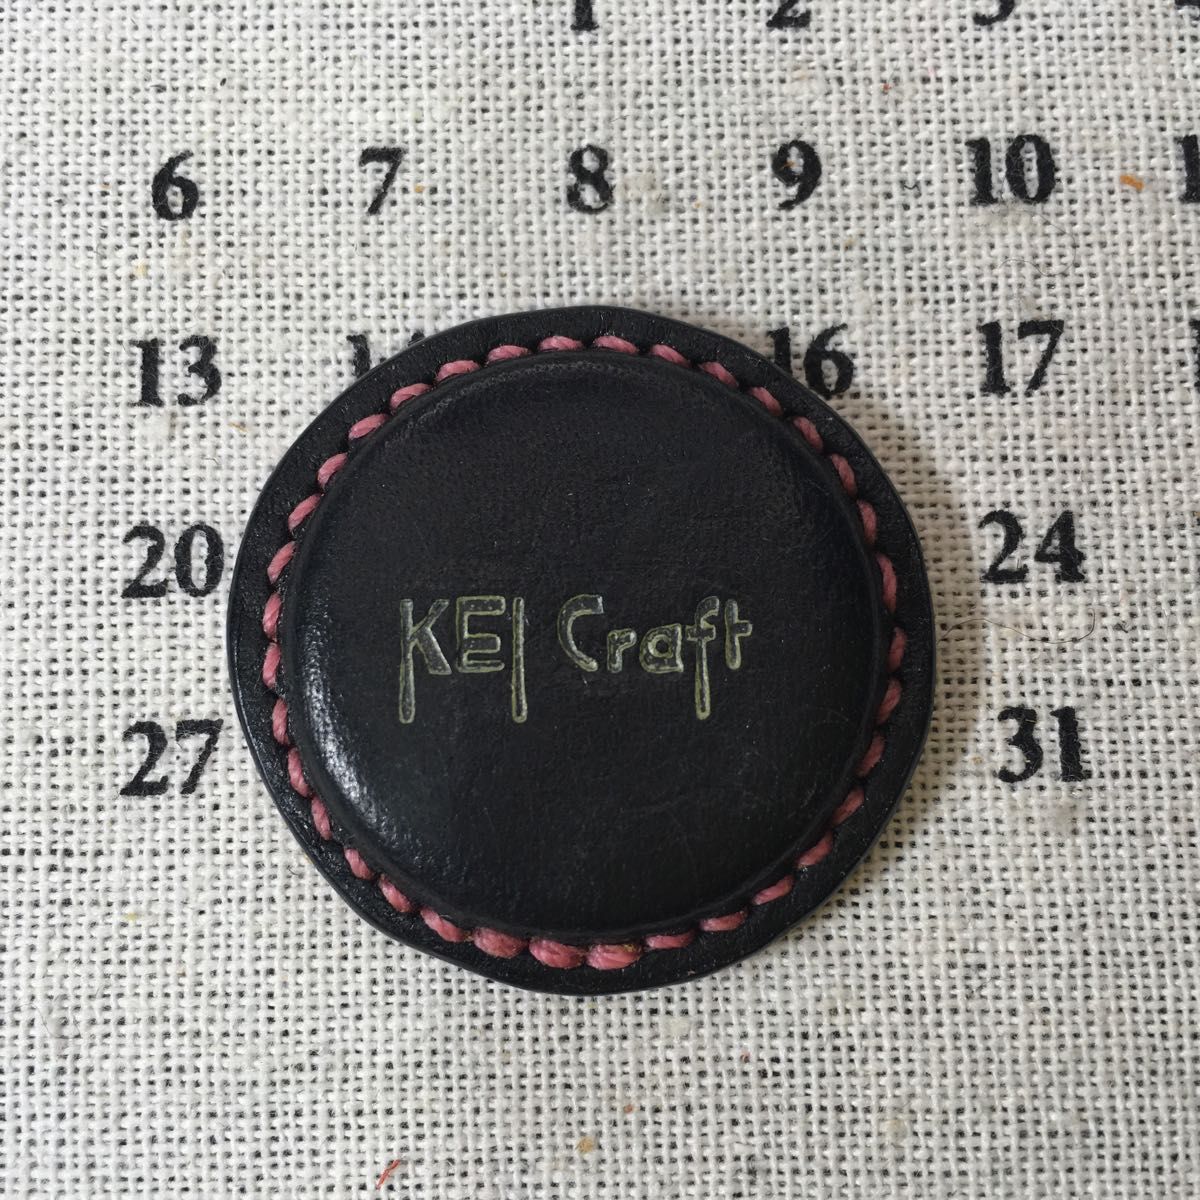 革で包んだ円型磁石(刺繍・裁縫・レザークラフト用針置き)マヤブラック×マヤオレンジ×ピンク